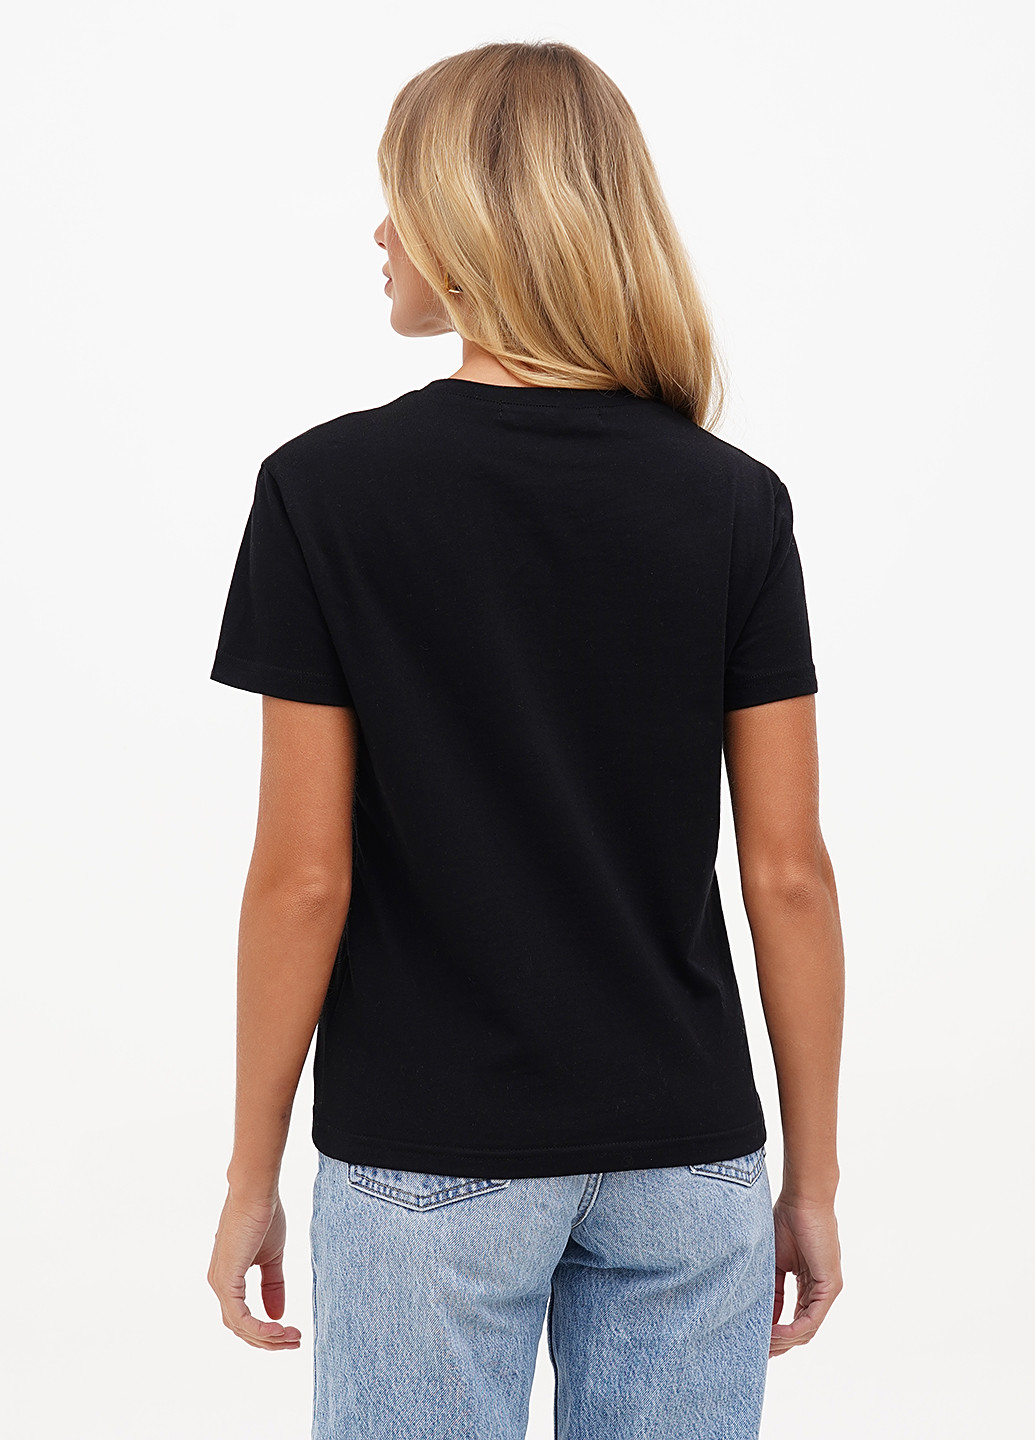 Черная всесезон футболка женская базовая KASTA design